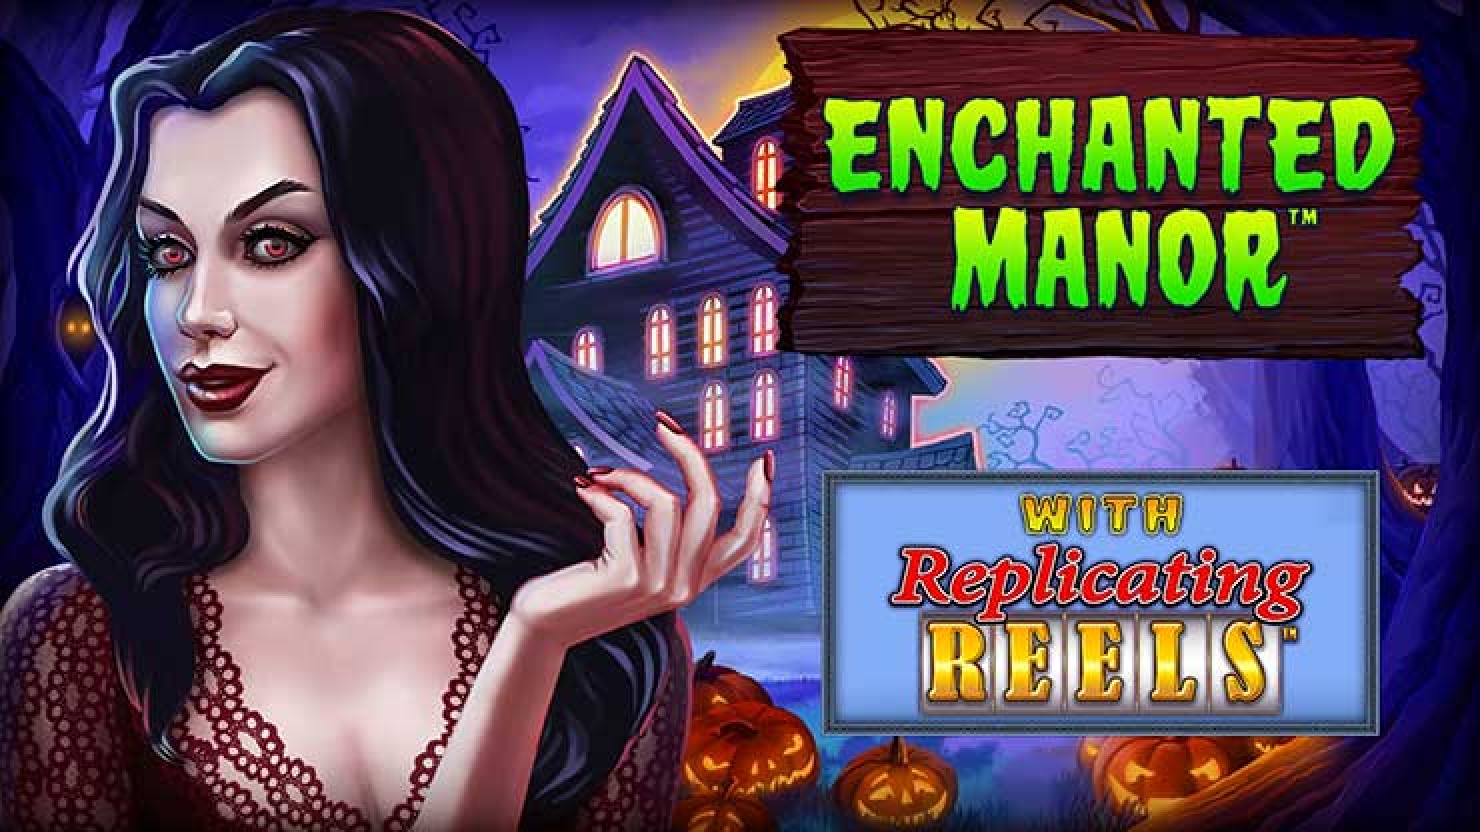 Enchanted Manor demo